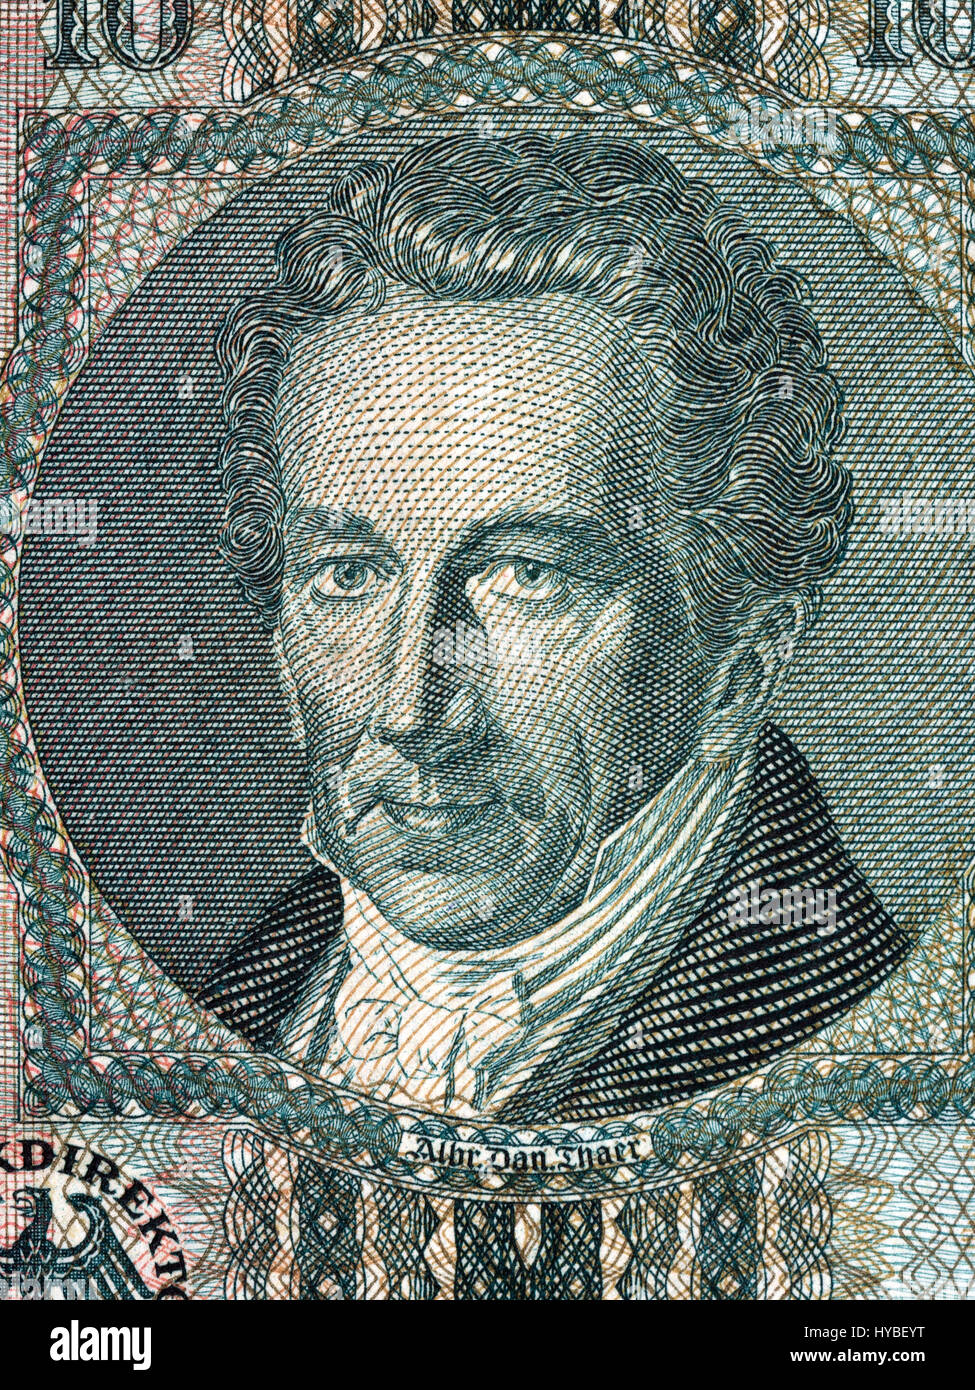 Albrecht Thaer ritratto dal vecchio denaro tedesco Foto Stock